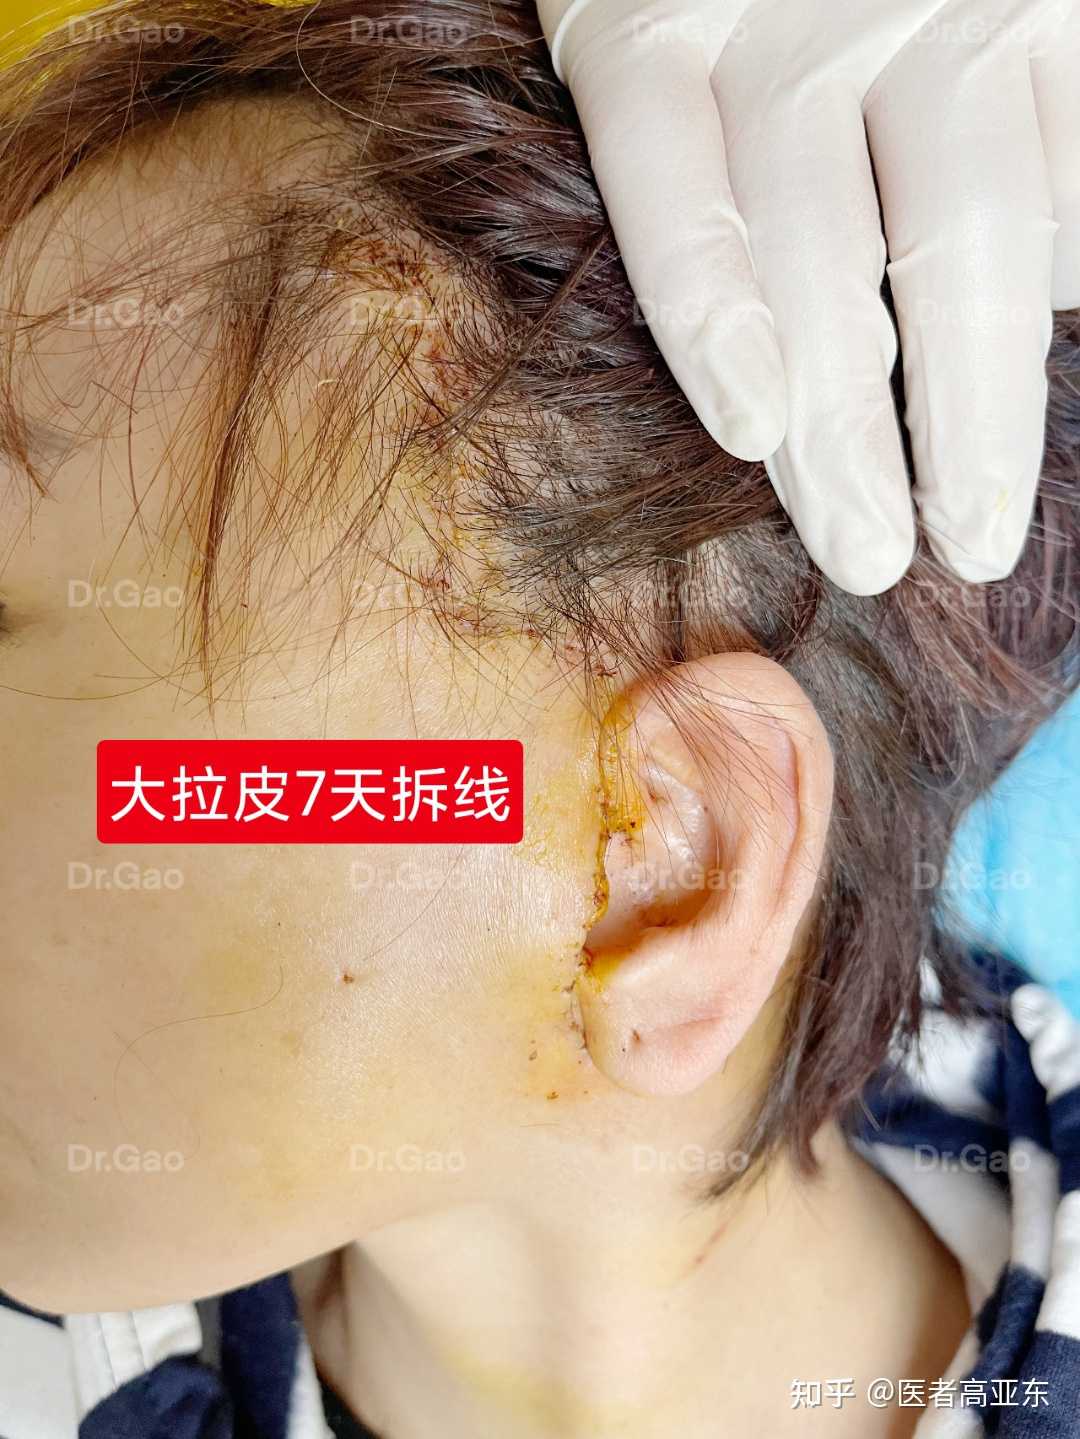 医者高亚东 的想法: 发际线,耳前切口大拉皮提升7天拆线,皮… - 知乎